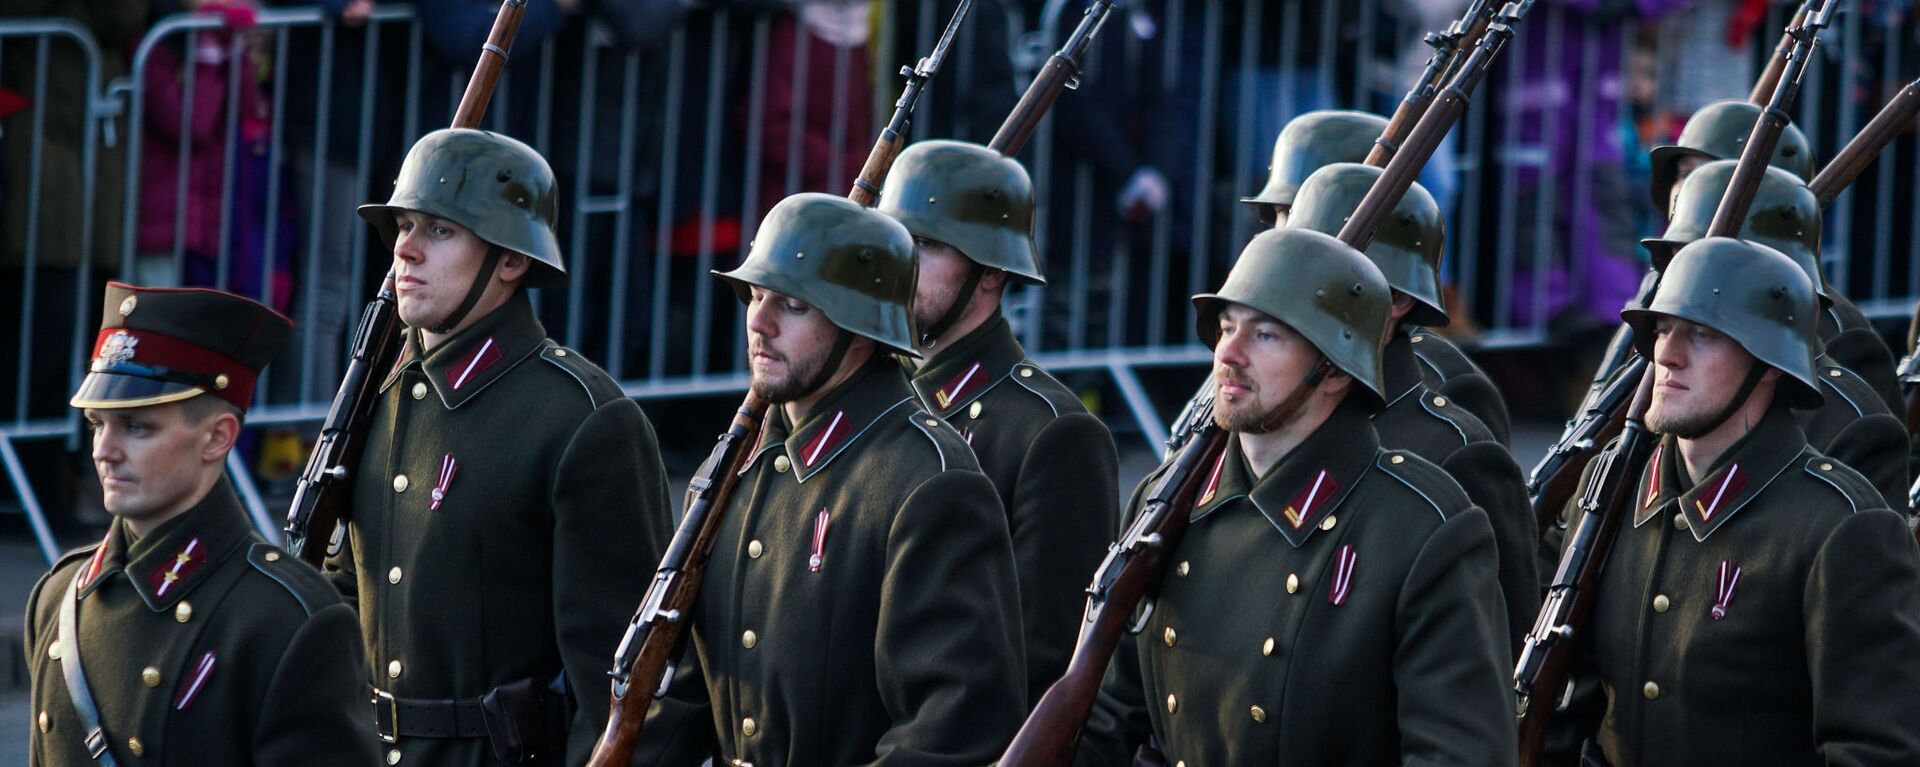 Латвийские солдаты на параде в честь столетия Латвии - Sputnik Латвия, 1920, 29.01.2020